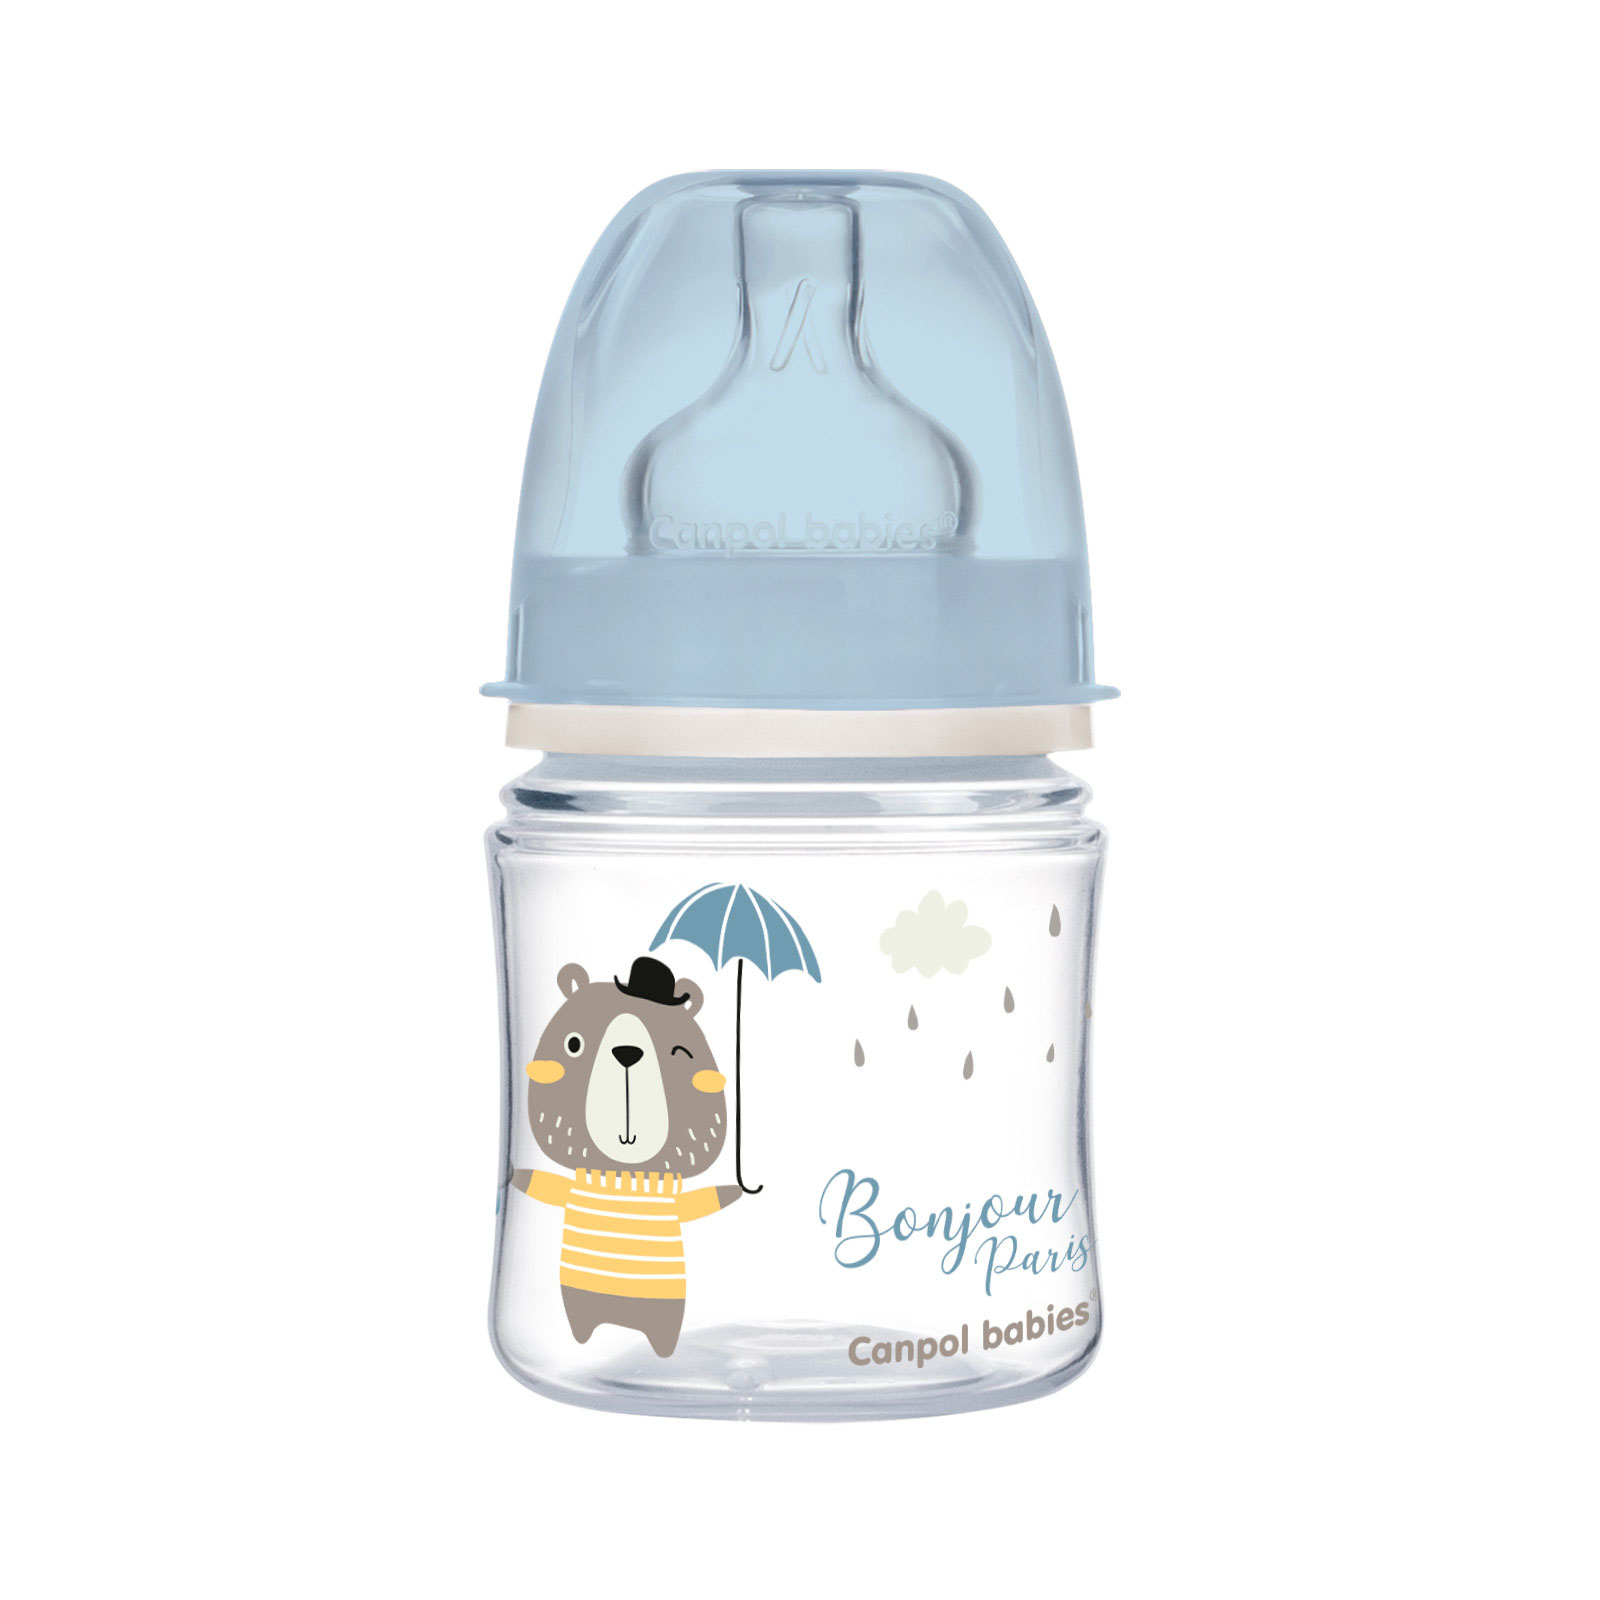 Бутылочка для кормления Canpol babies Bonjour Paris с широким отверстием 120 мл Розовая (35/231_pin)